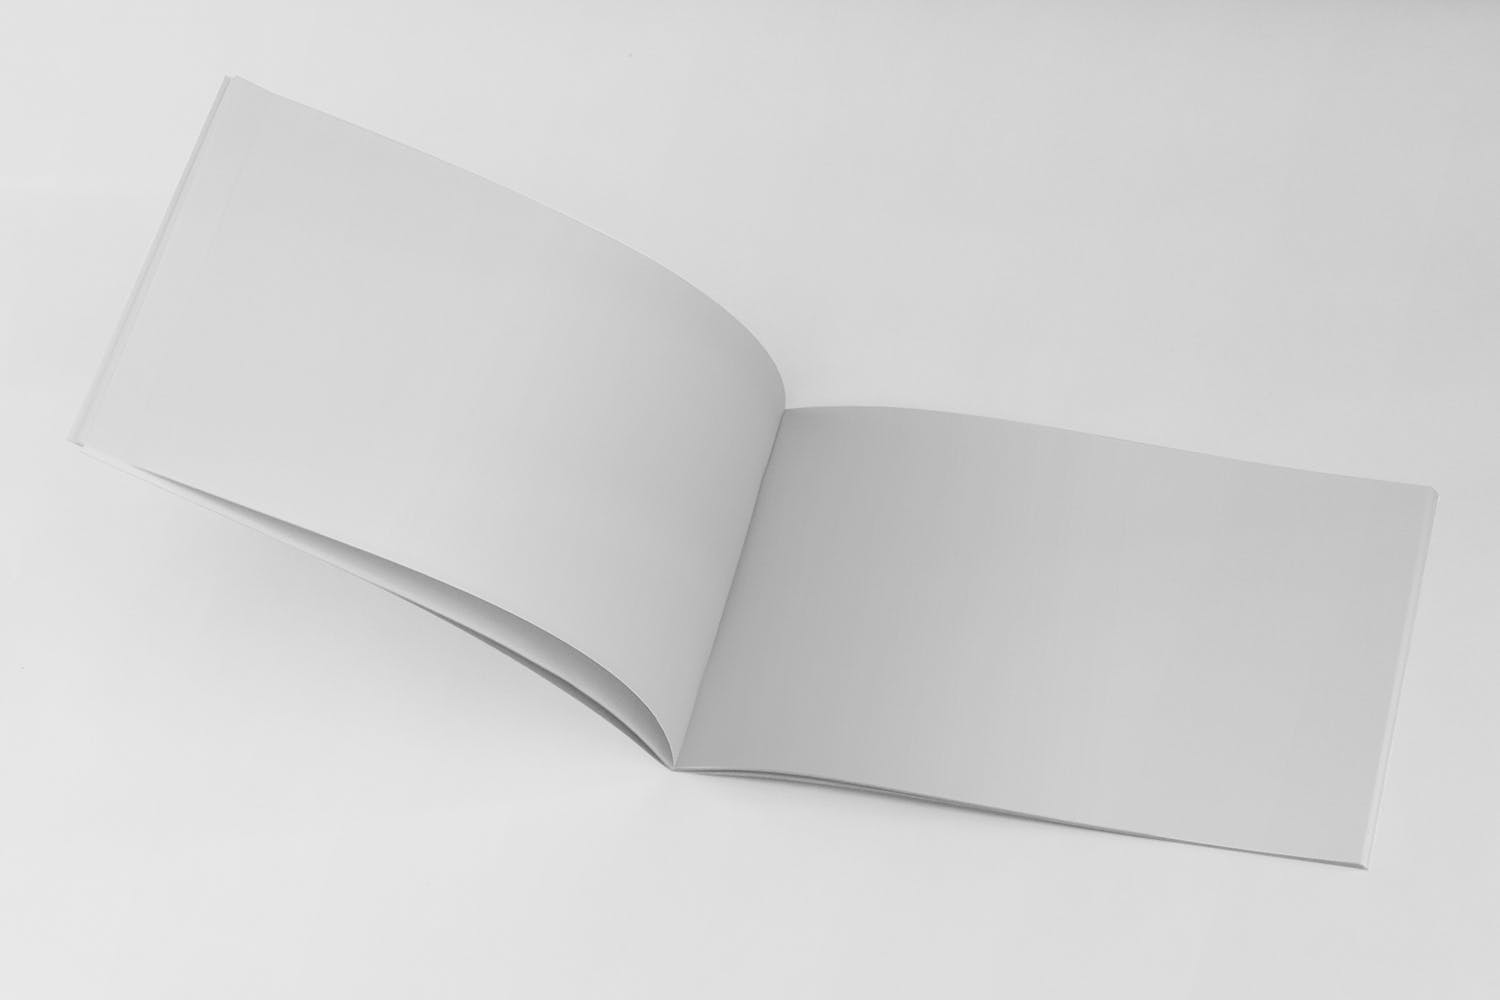 美国信纸规格宣传册内页版式设计翻页视图样机第一素材精选 US Half Letter Brochure Mockup Folded Page插图(1)